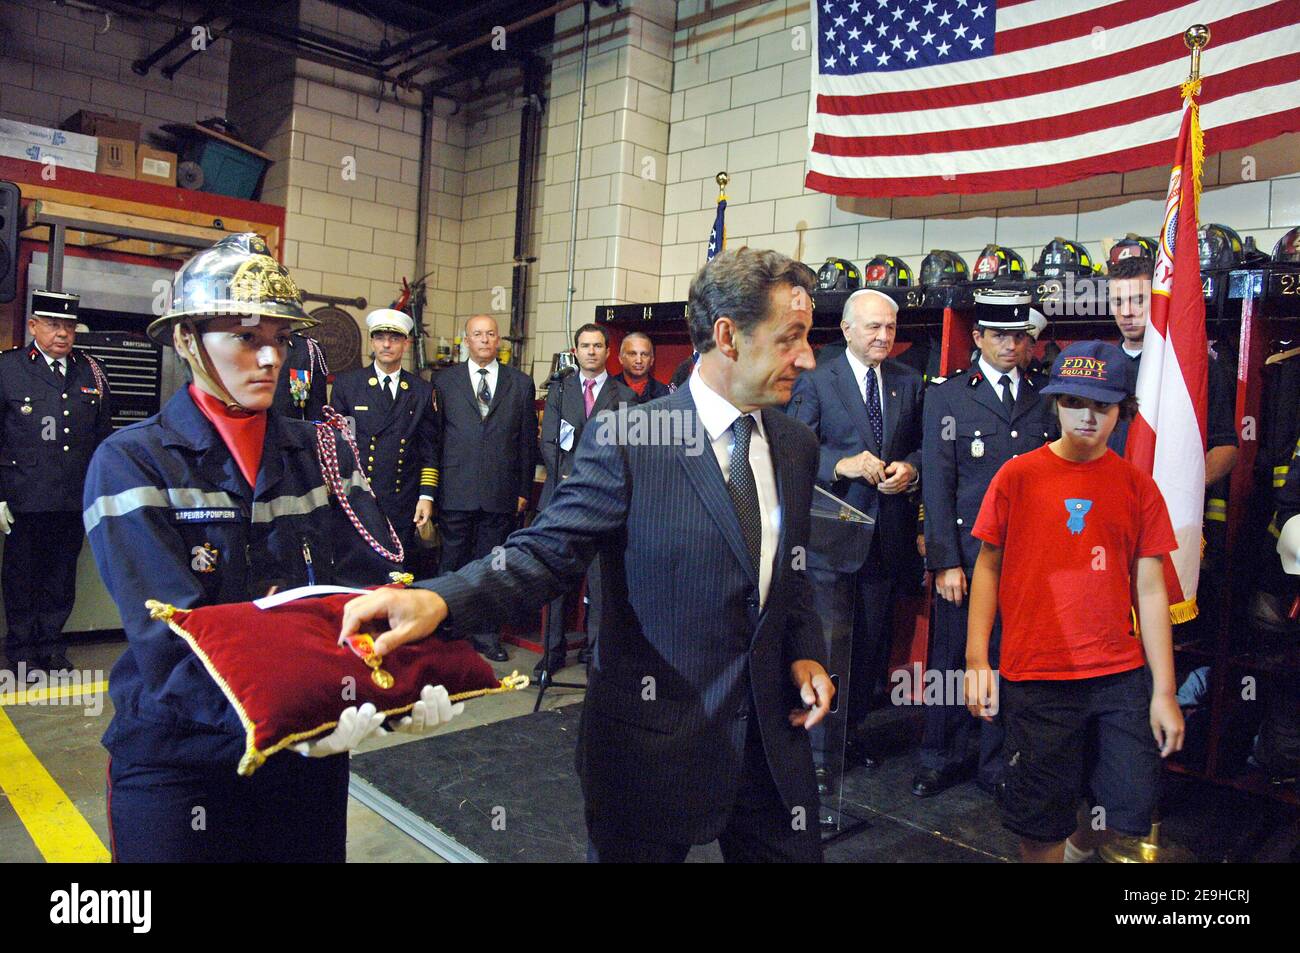 Il ministro degli interni francese Nicolas Sarkozy presenta la Medaglia d'onore dei vigili del fuoco francesi alla FDNY, a New York City, NY, USA, il 10 settembre 2006. Accanto a lui si trova Aidan Fontana, 10 anni, che ha perso il padre Davide il 11 settembre 2001. Foto di Lionel Hahn/ABACAPRESS.COM Foto Stock